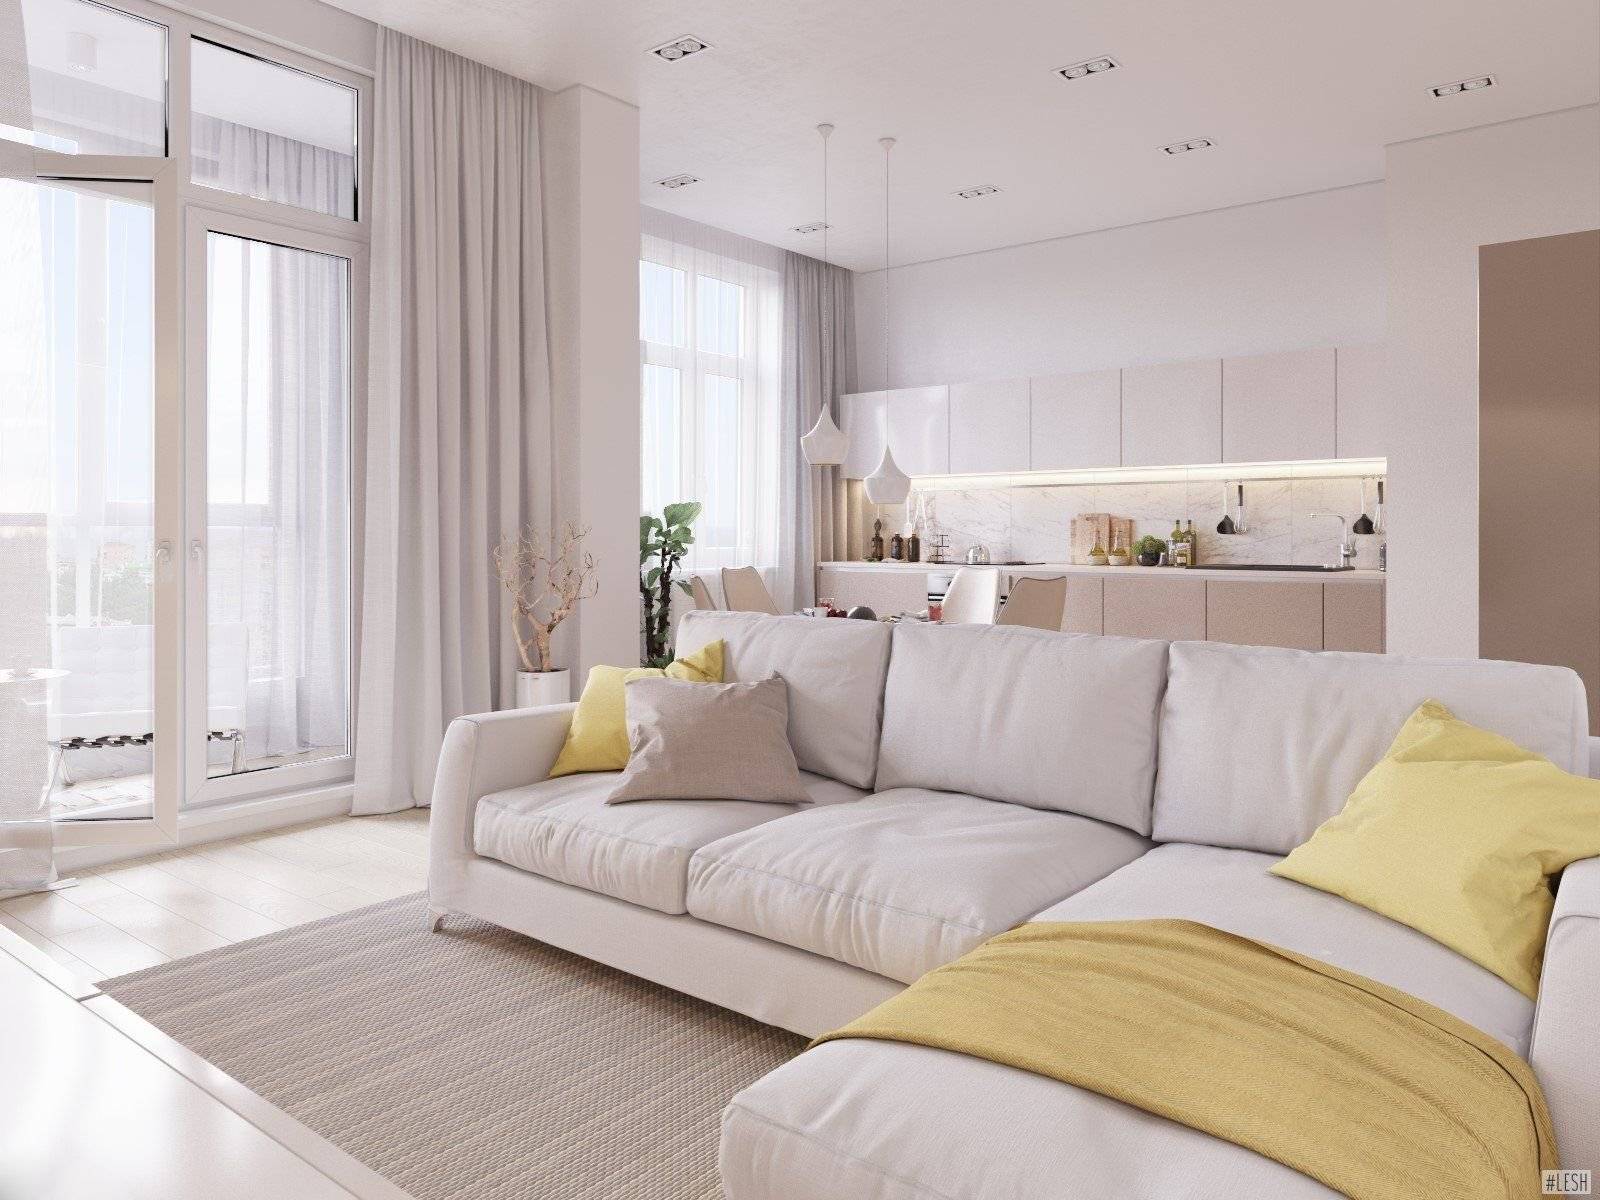 Дизайн квартиры в светлых тонах - современный стиль, лучшие идеи